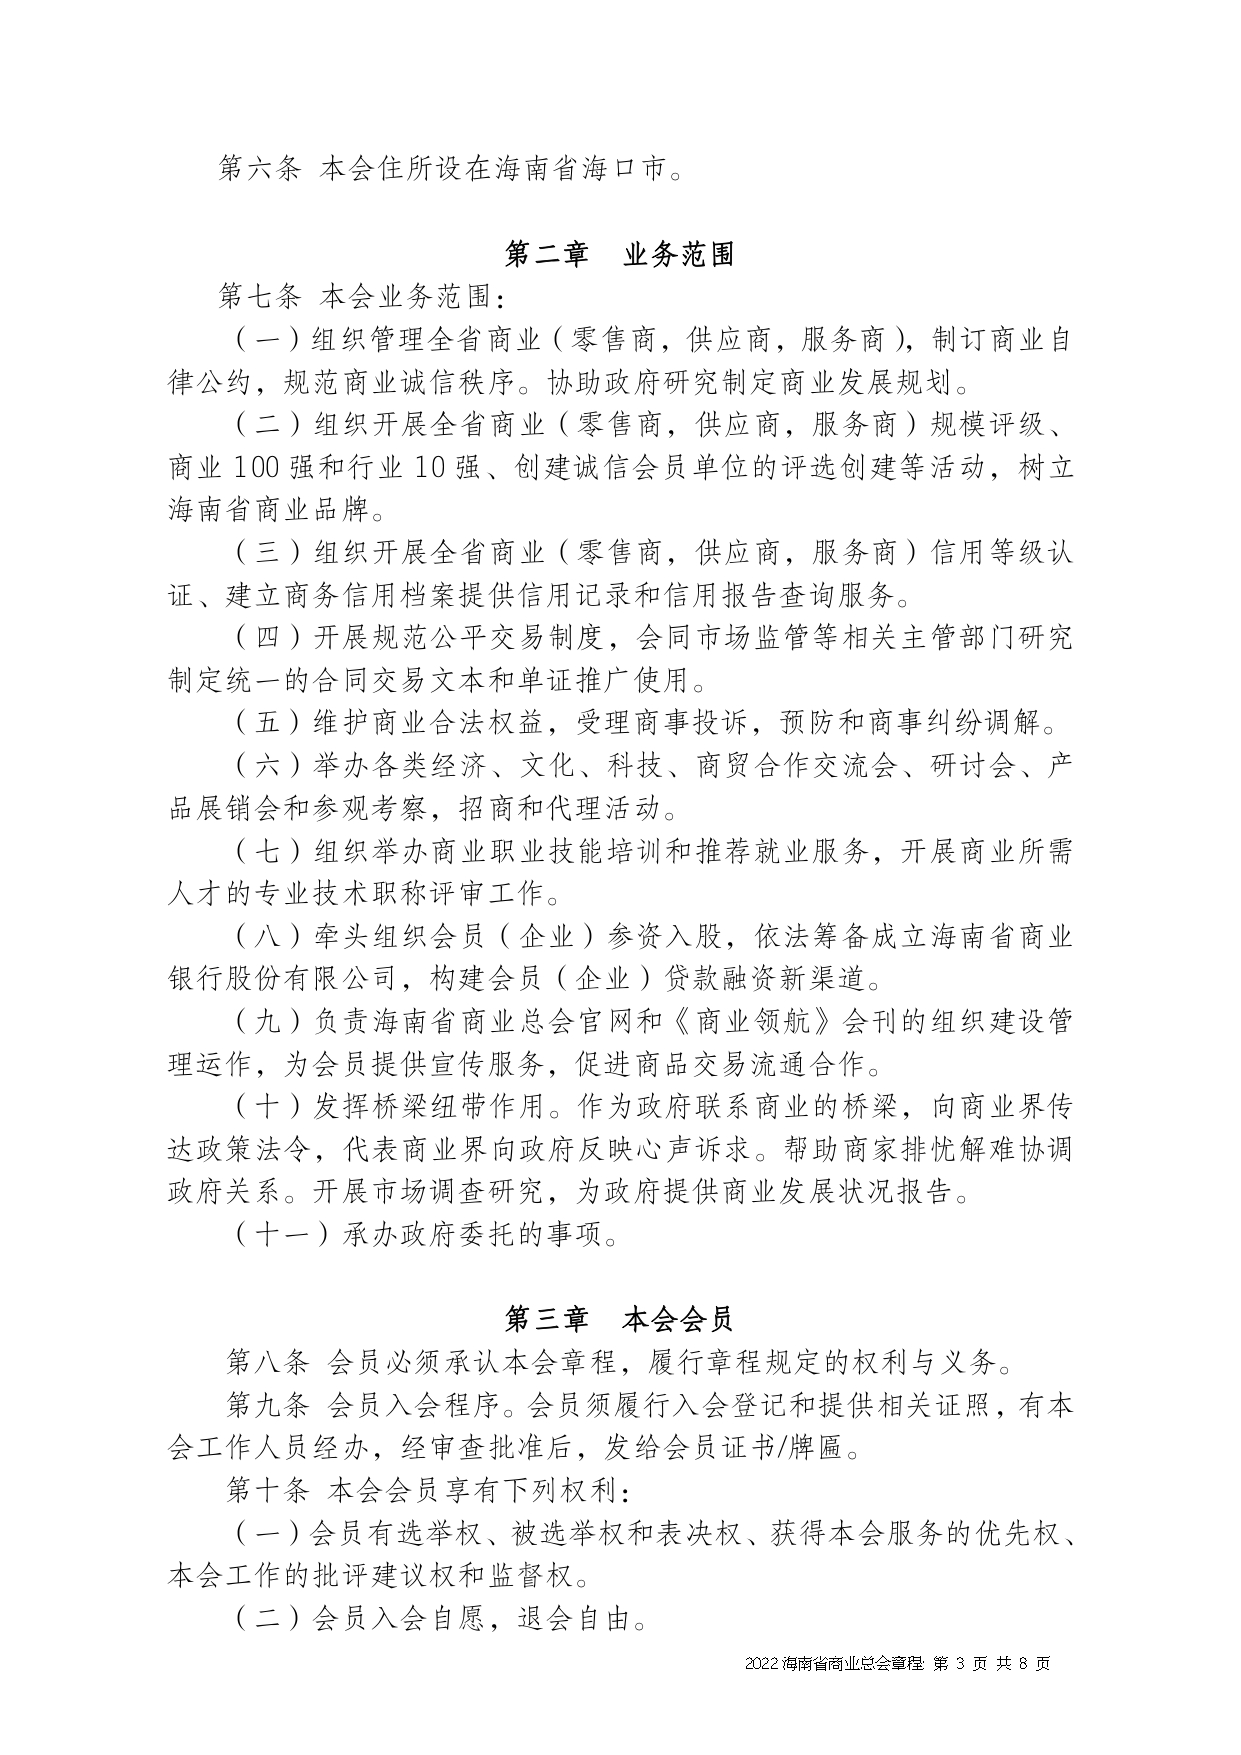 2022+海南省商业总会章程（修正版）-1_page-0003.jpg